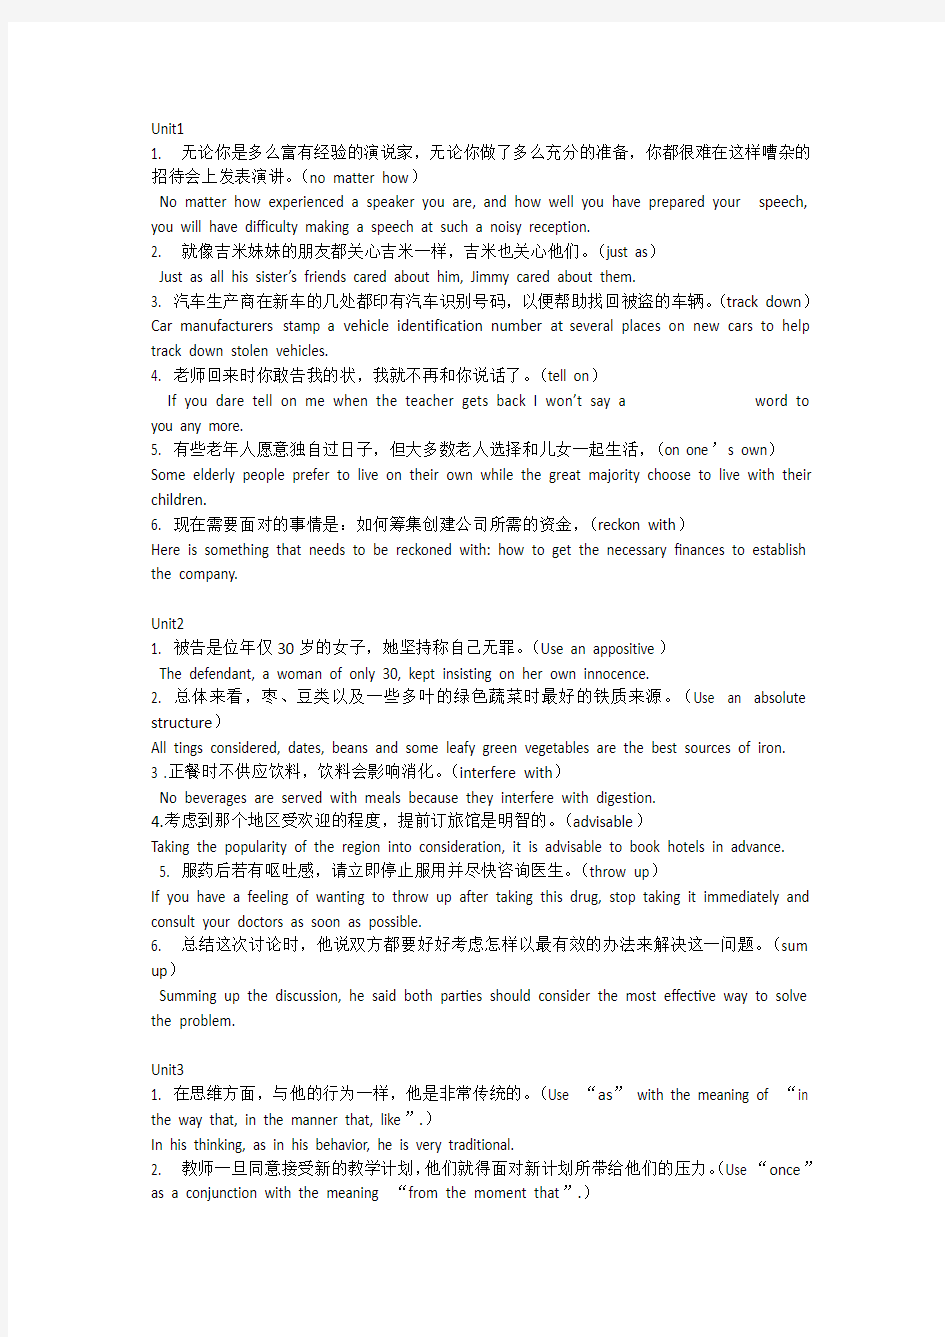 新视野大学英语读写教程第二版第三册英译汉和汉译英原文及答案